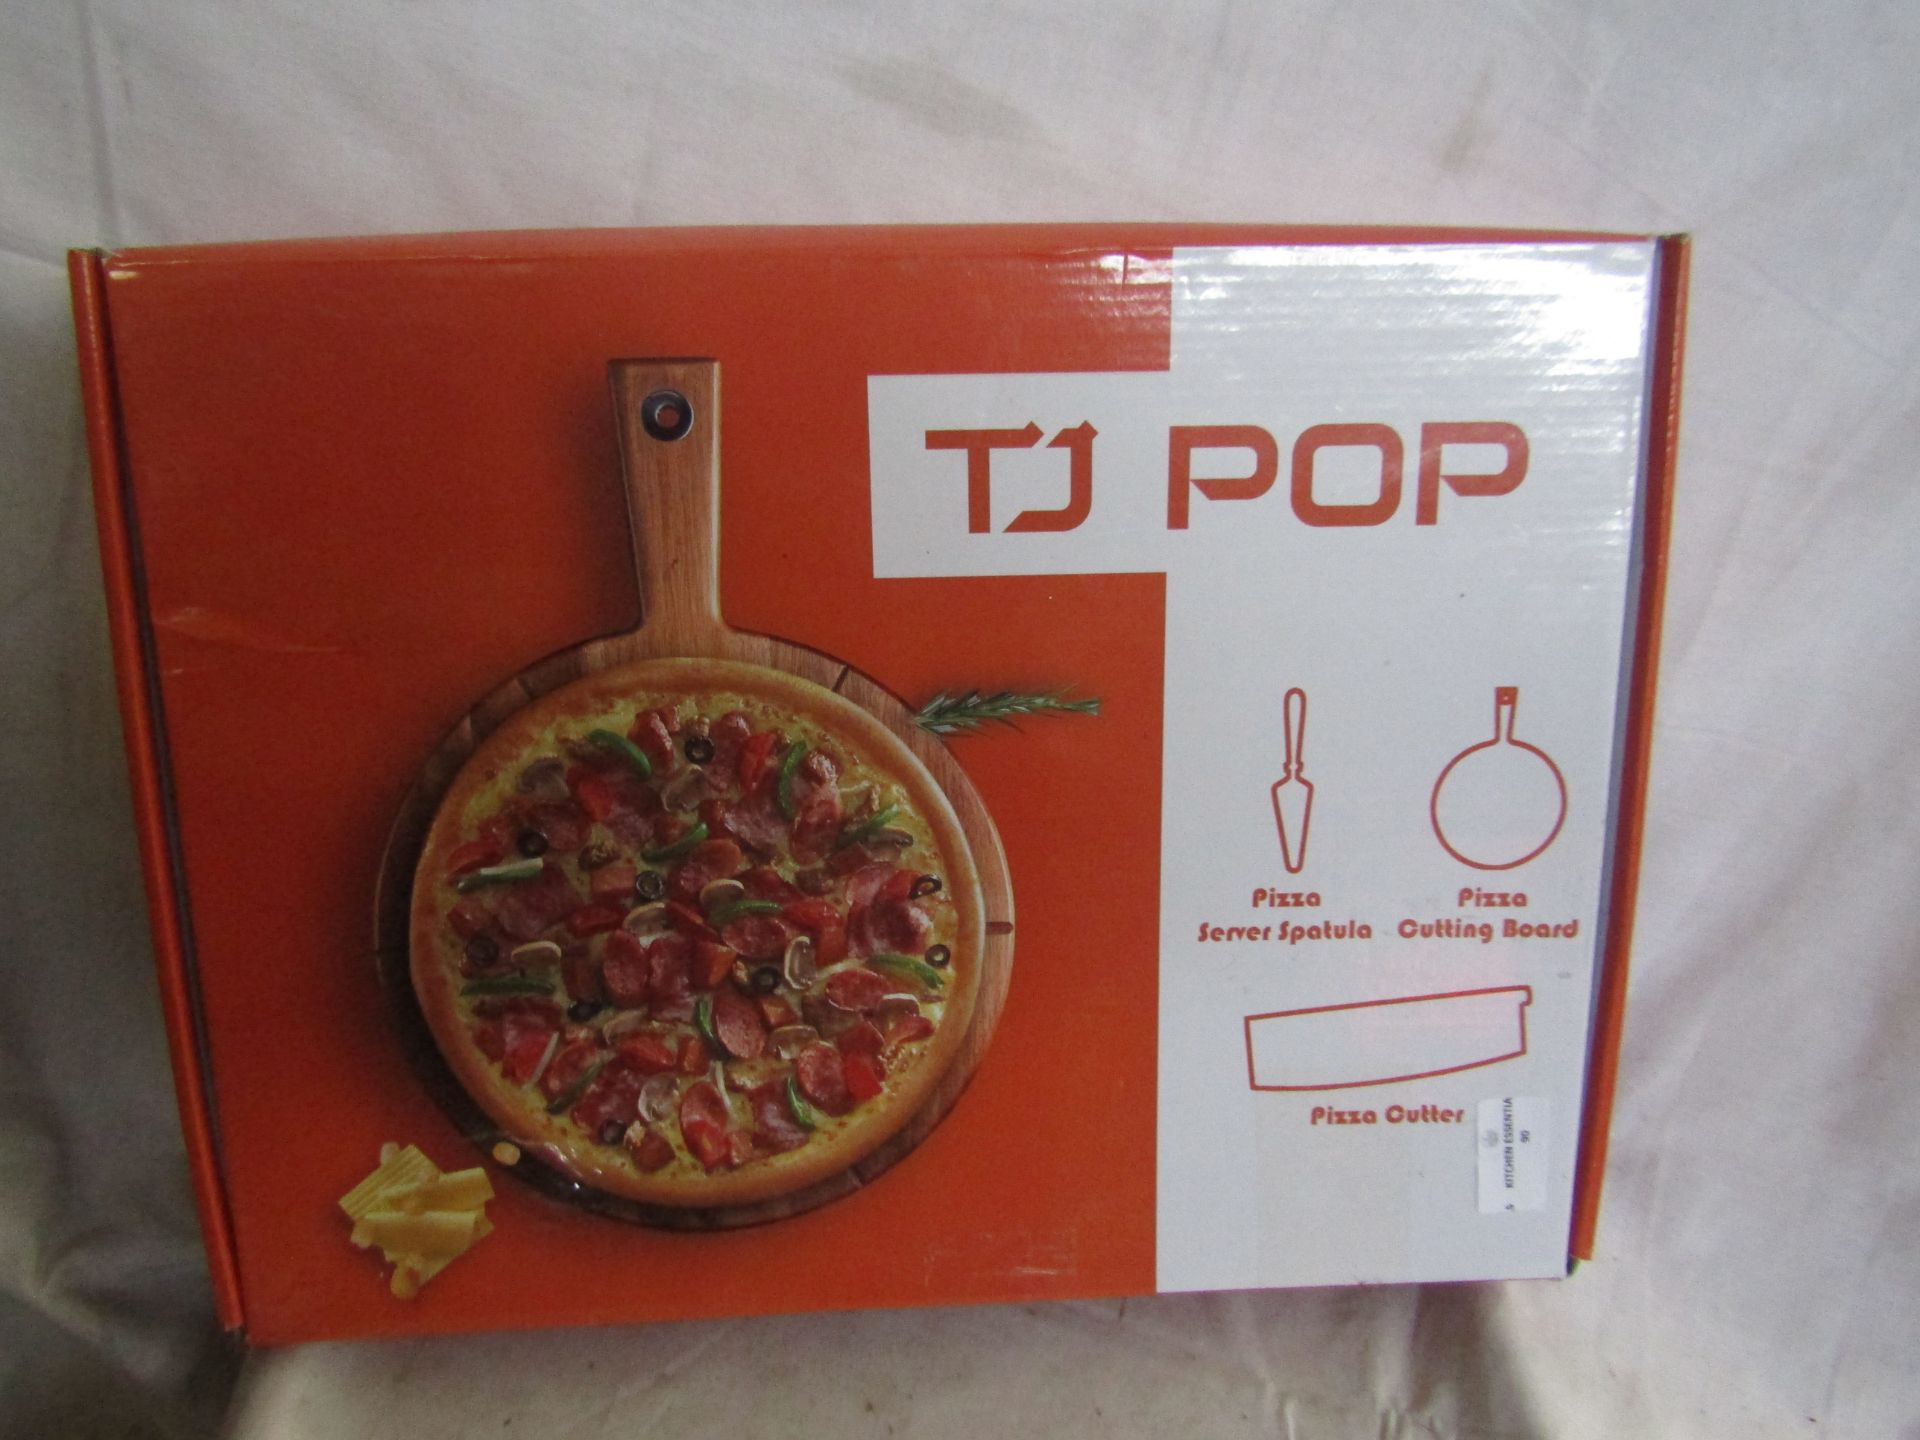 TJ Pop - 3-Piece Pizza Serving Set - Good Condition & Boxed.